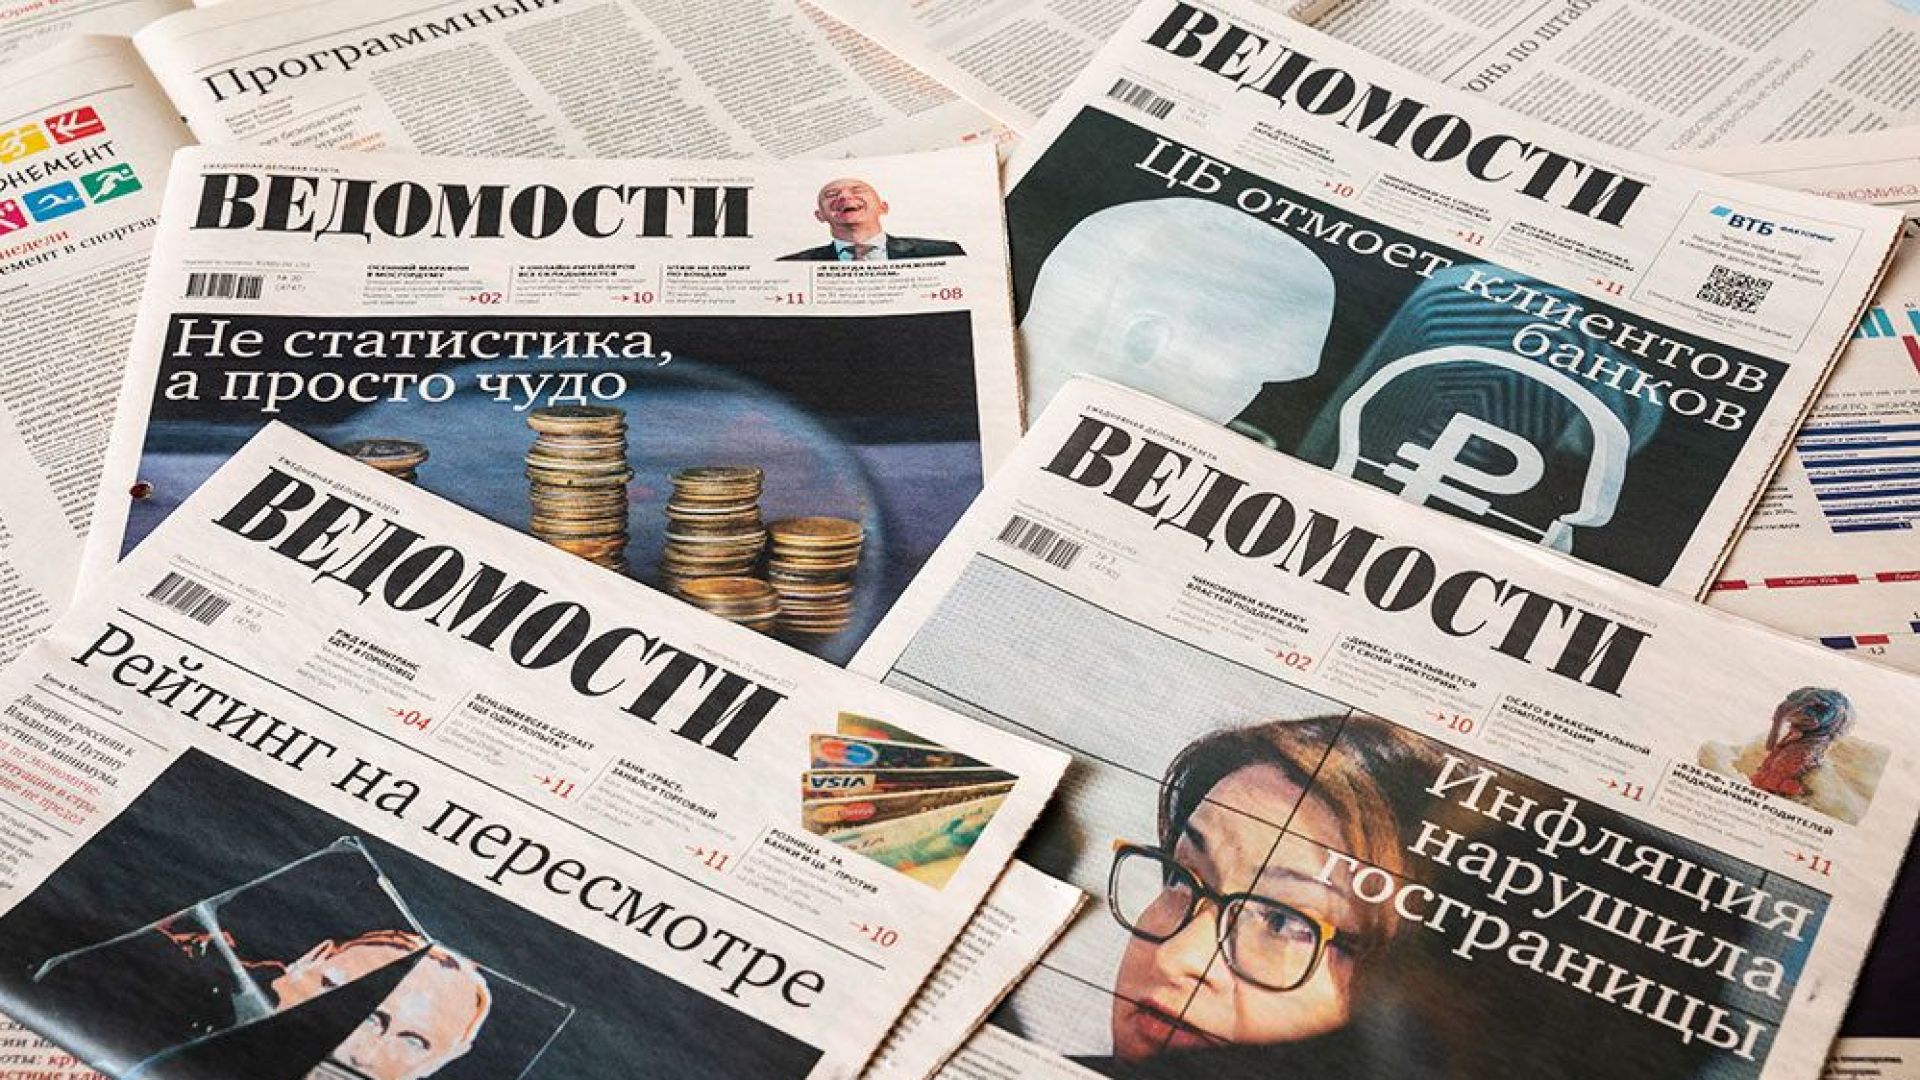 Петима заместник-главни редактори на водещия руски икономически всекидневник Ведомости подадоха